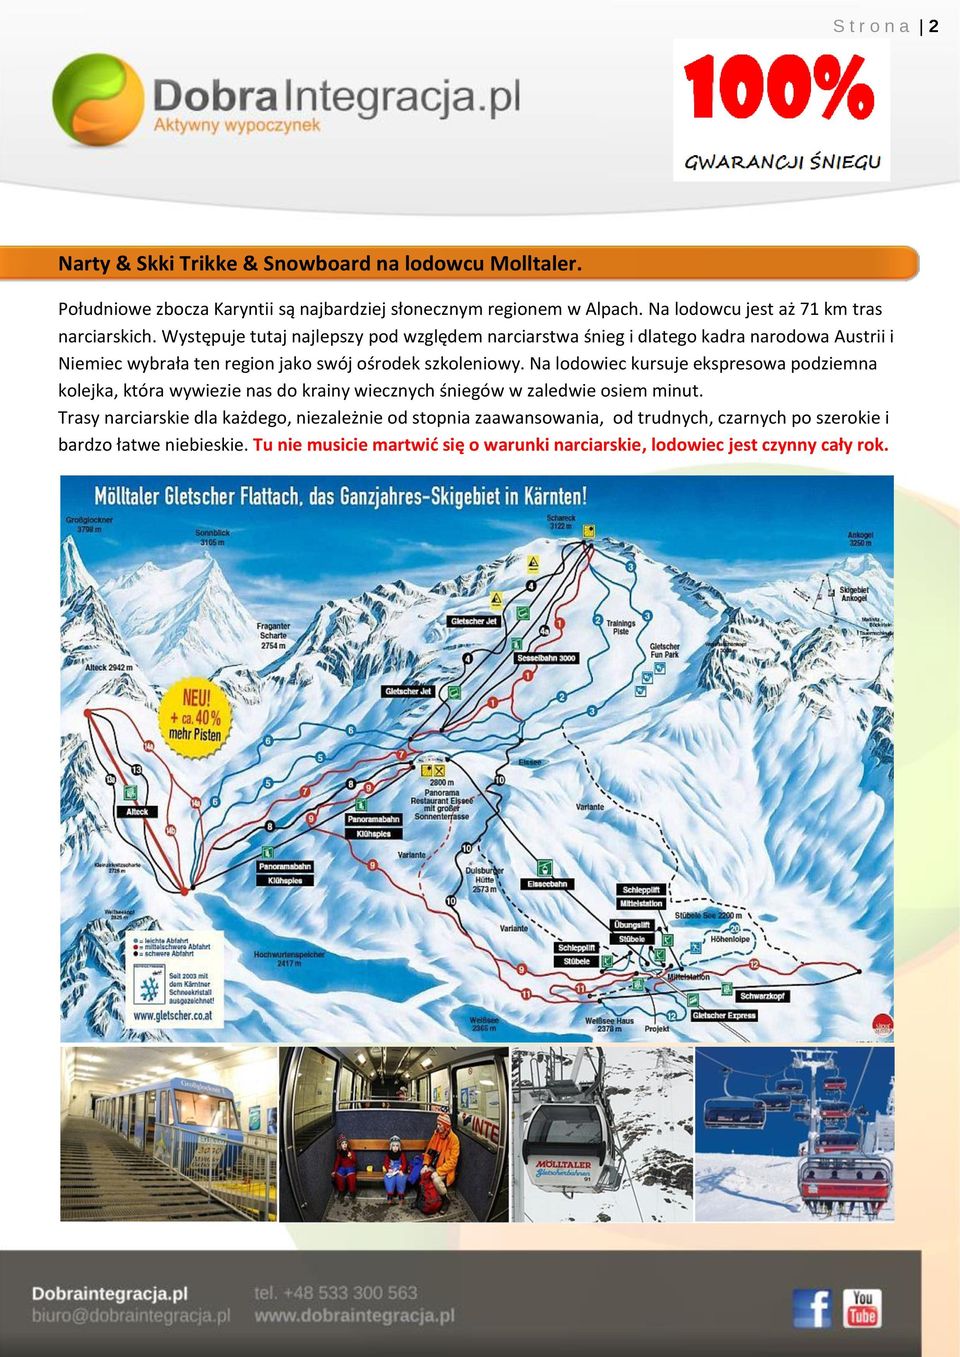 Występuje tutaj najlepszy pod względem narciarstwa śnieg i dlatego kadra narodowa Austrii i Niemiec wybrała ten region jako swój ośrodek szkoleniowy.